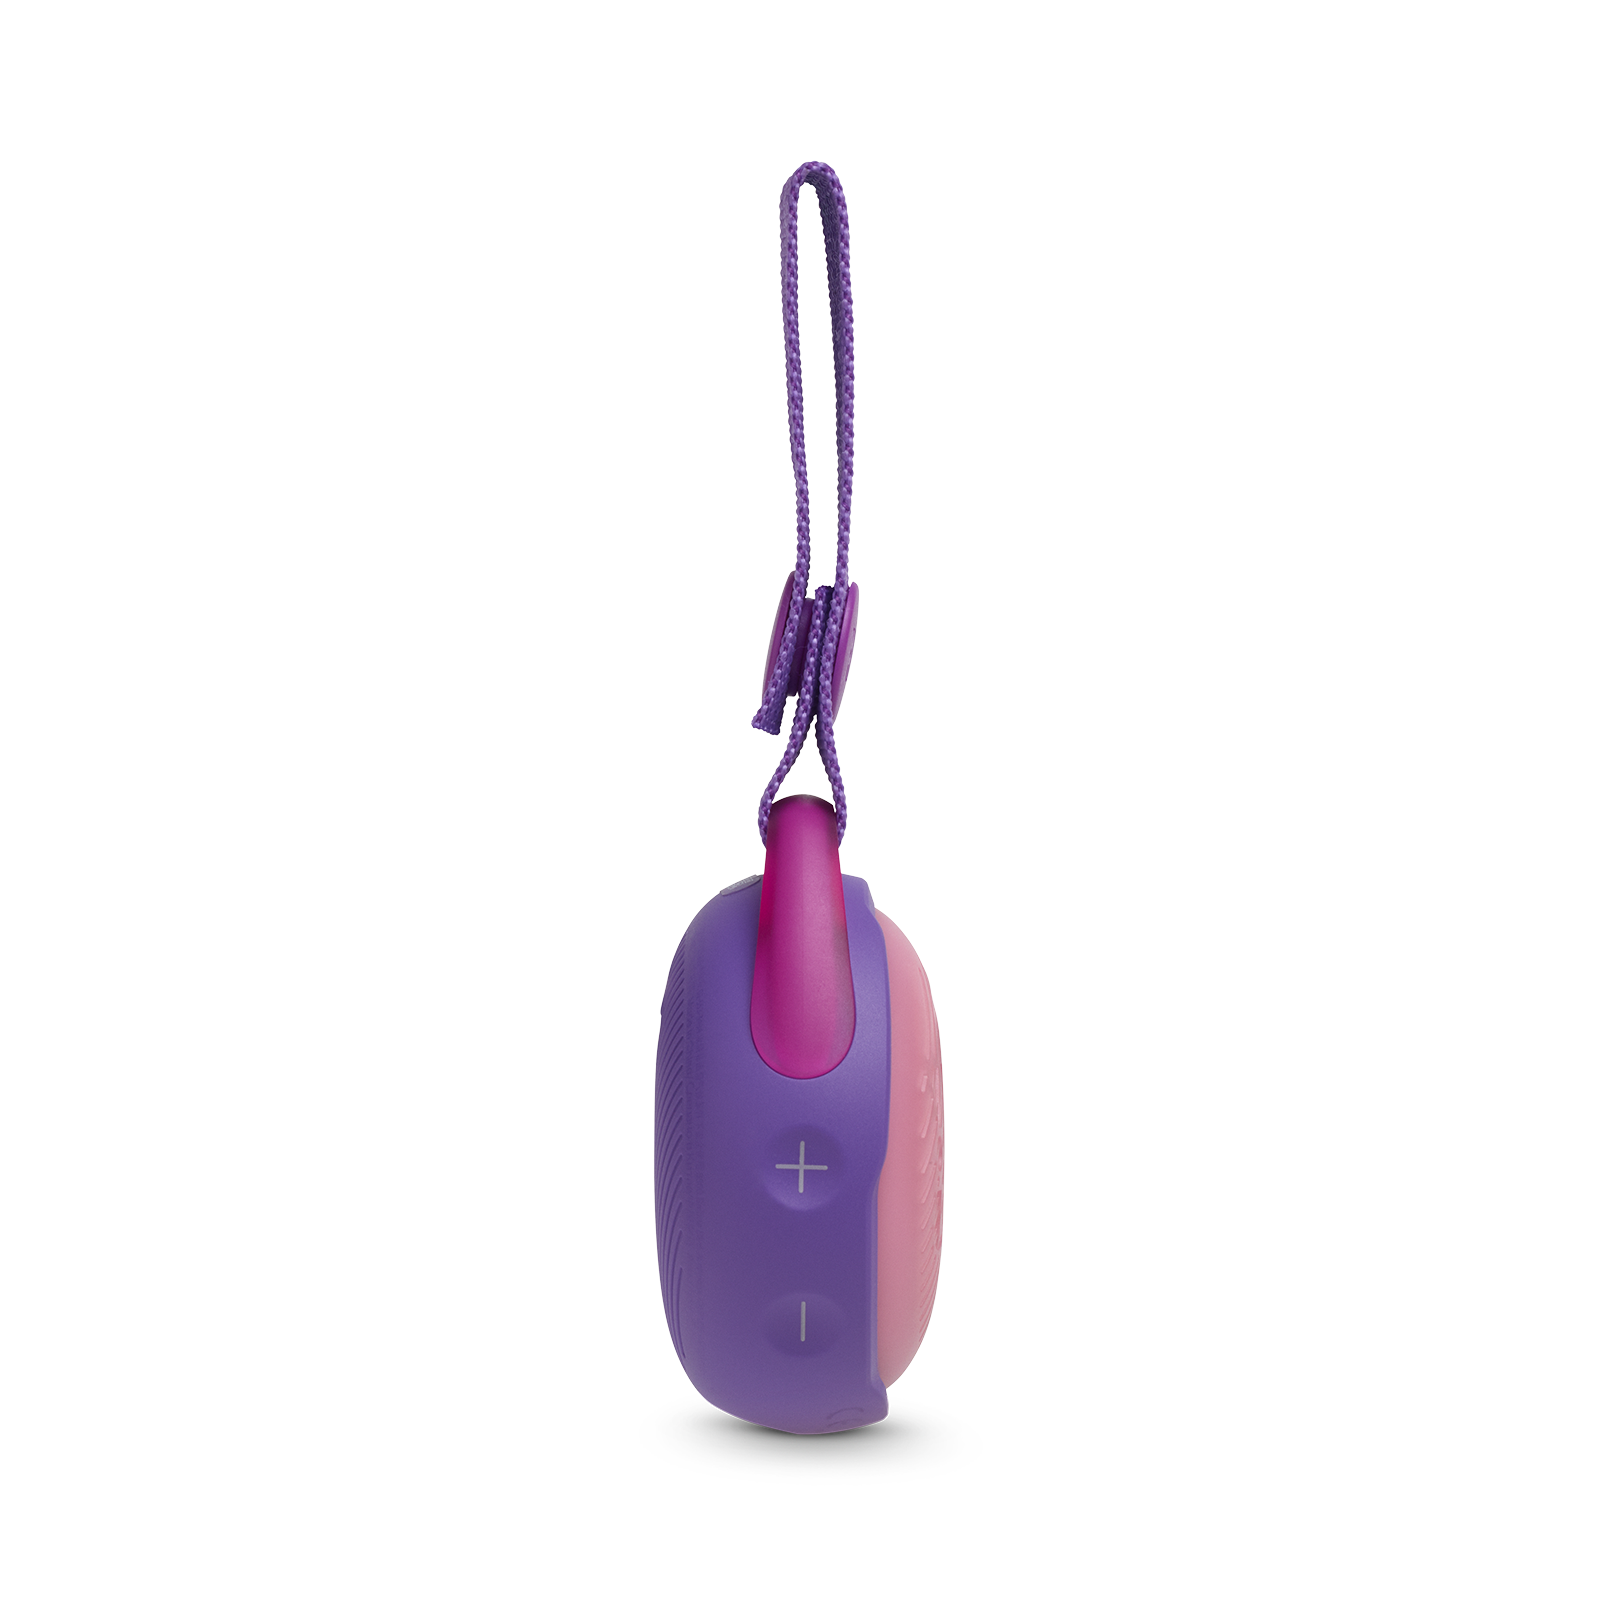 JBL JR Pop - Iris Purple - Portable speaker for kids - Detailshot 1